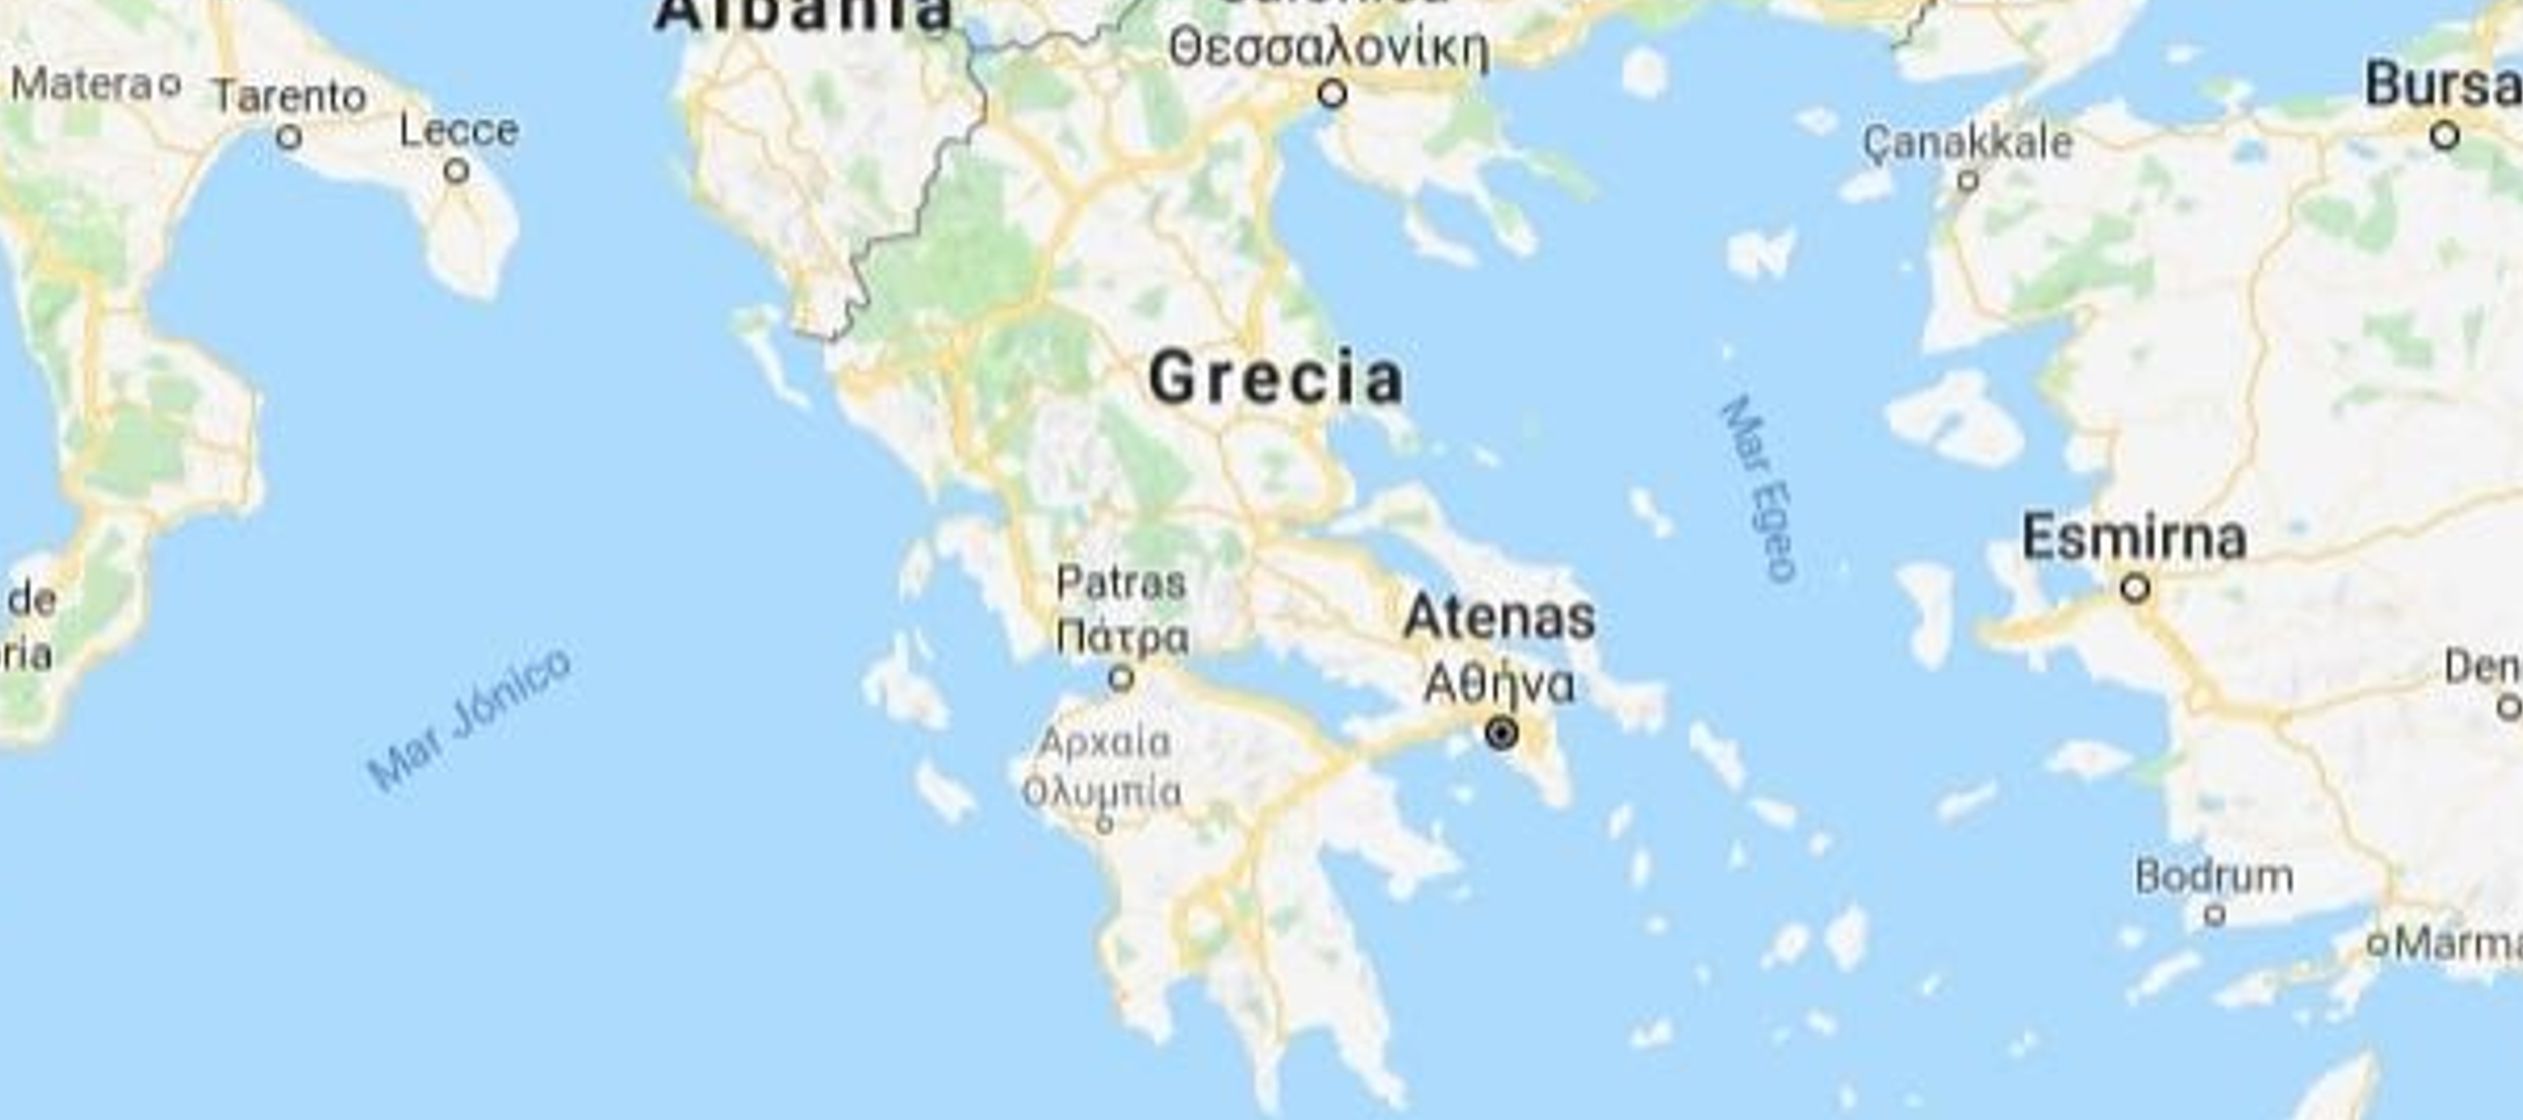 Grecia se ubica sobre una de las regiones más propensas a sismos y se registran miles de...